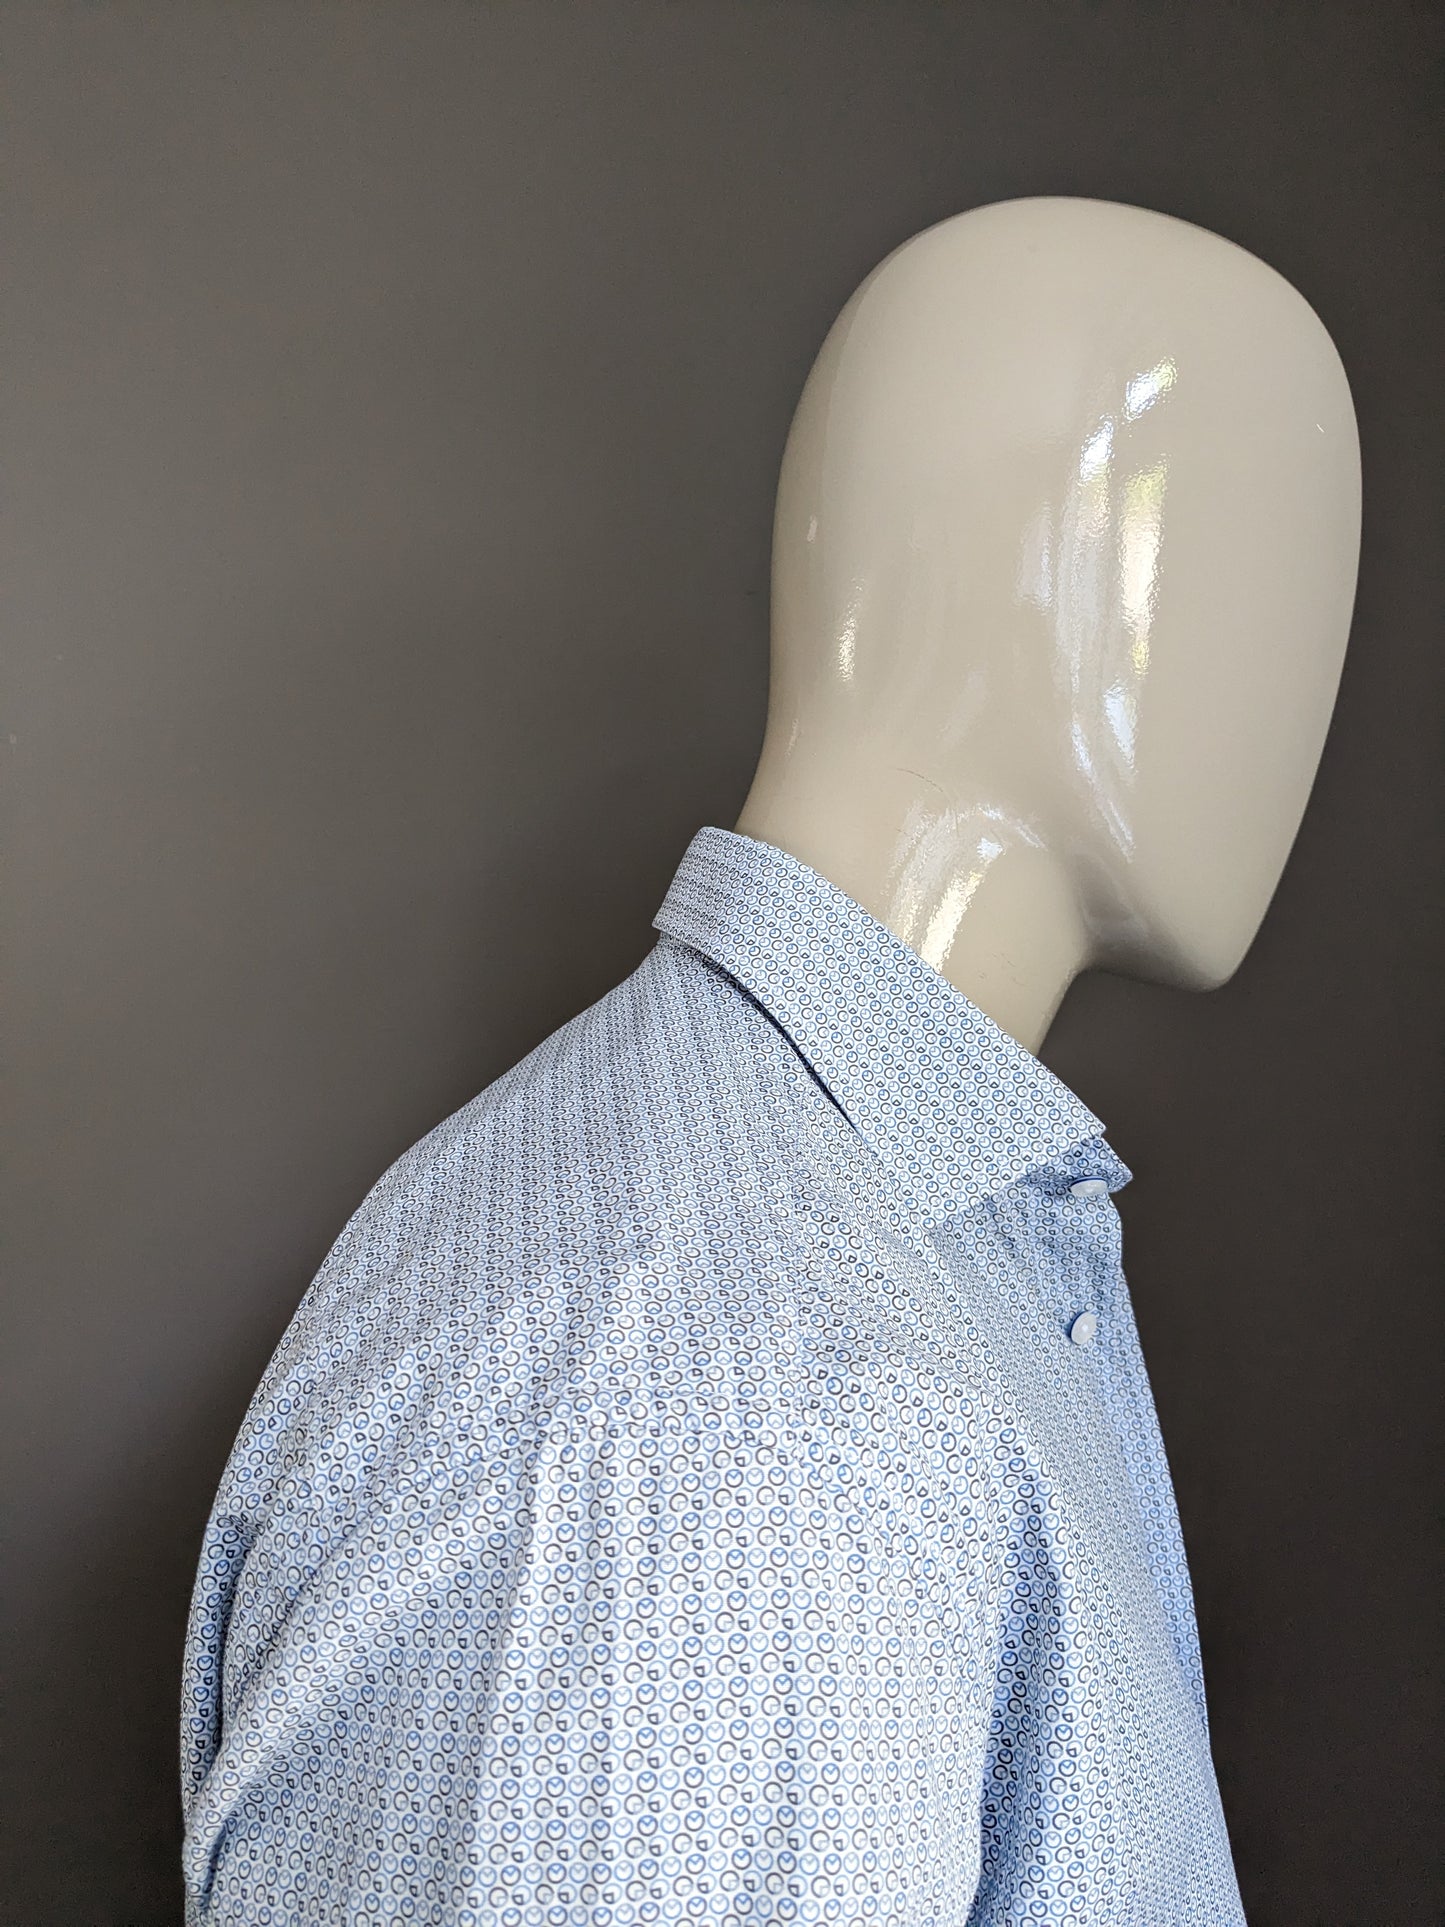 Max Goodman Shirt. Blaubrauner weißer Druck. Größe L.